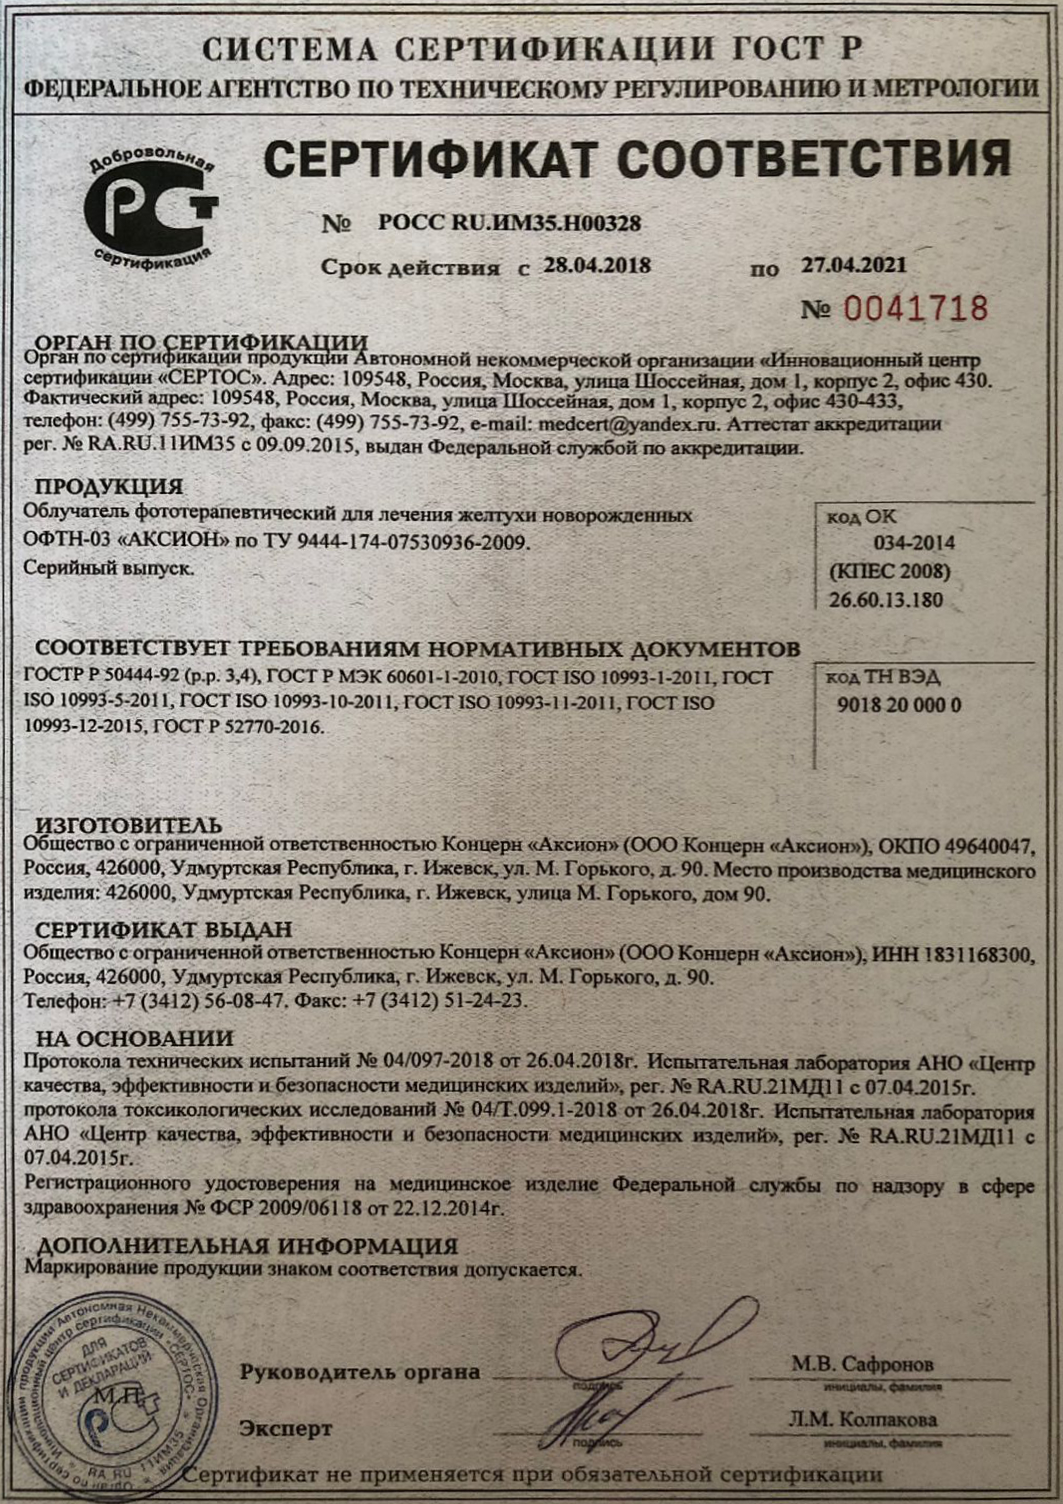 Сертификат ЕАС лампы нижнего света ОФТН-03 'Аксион'